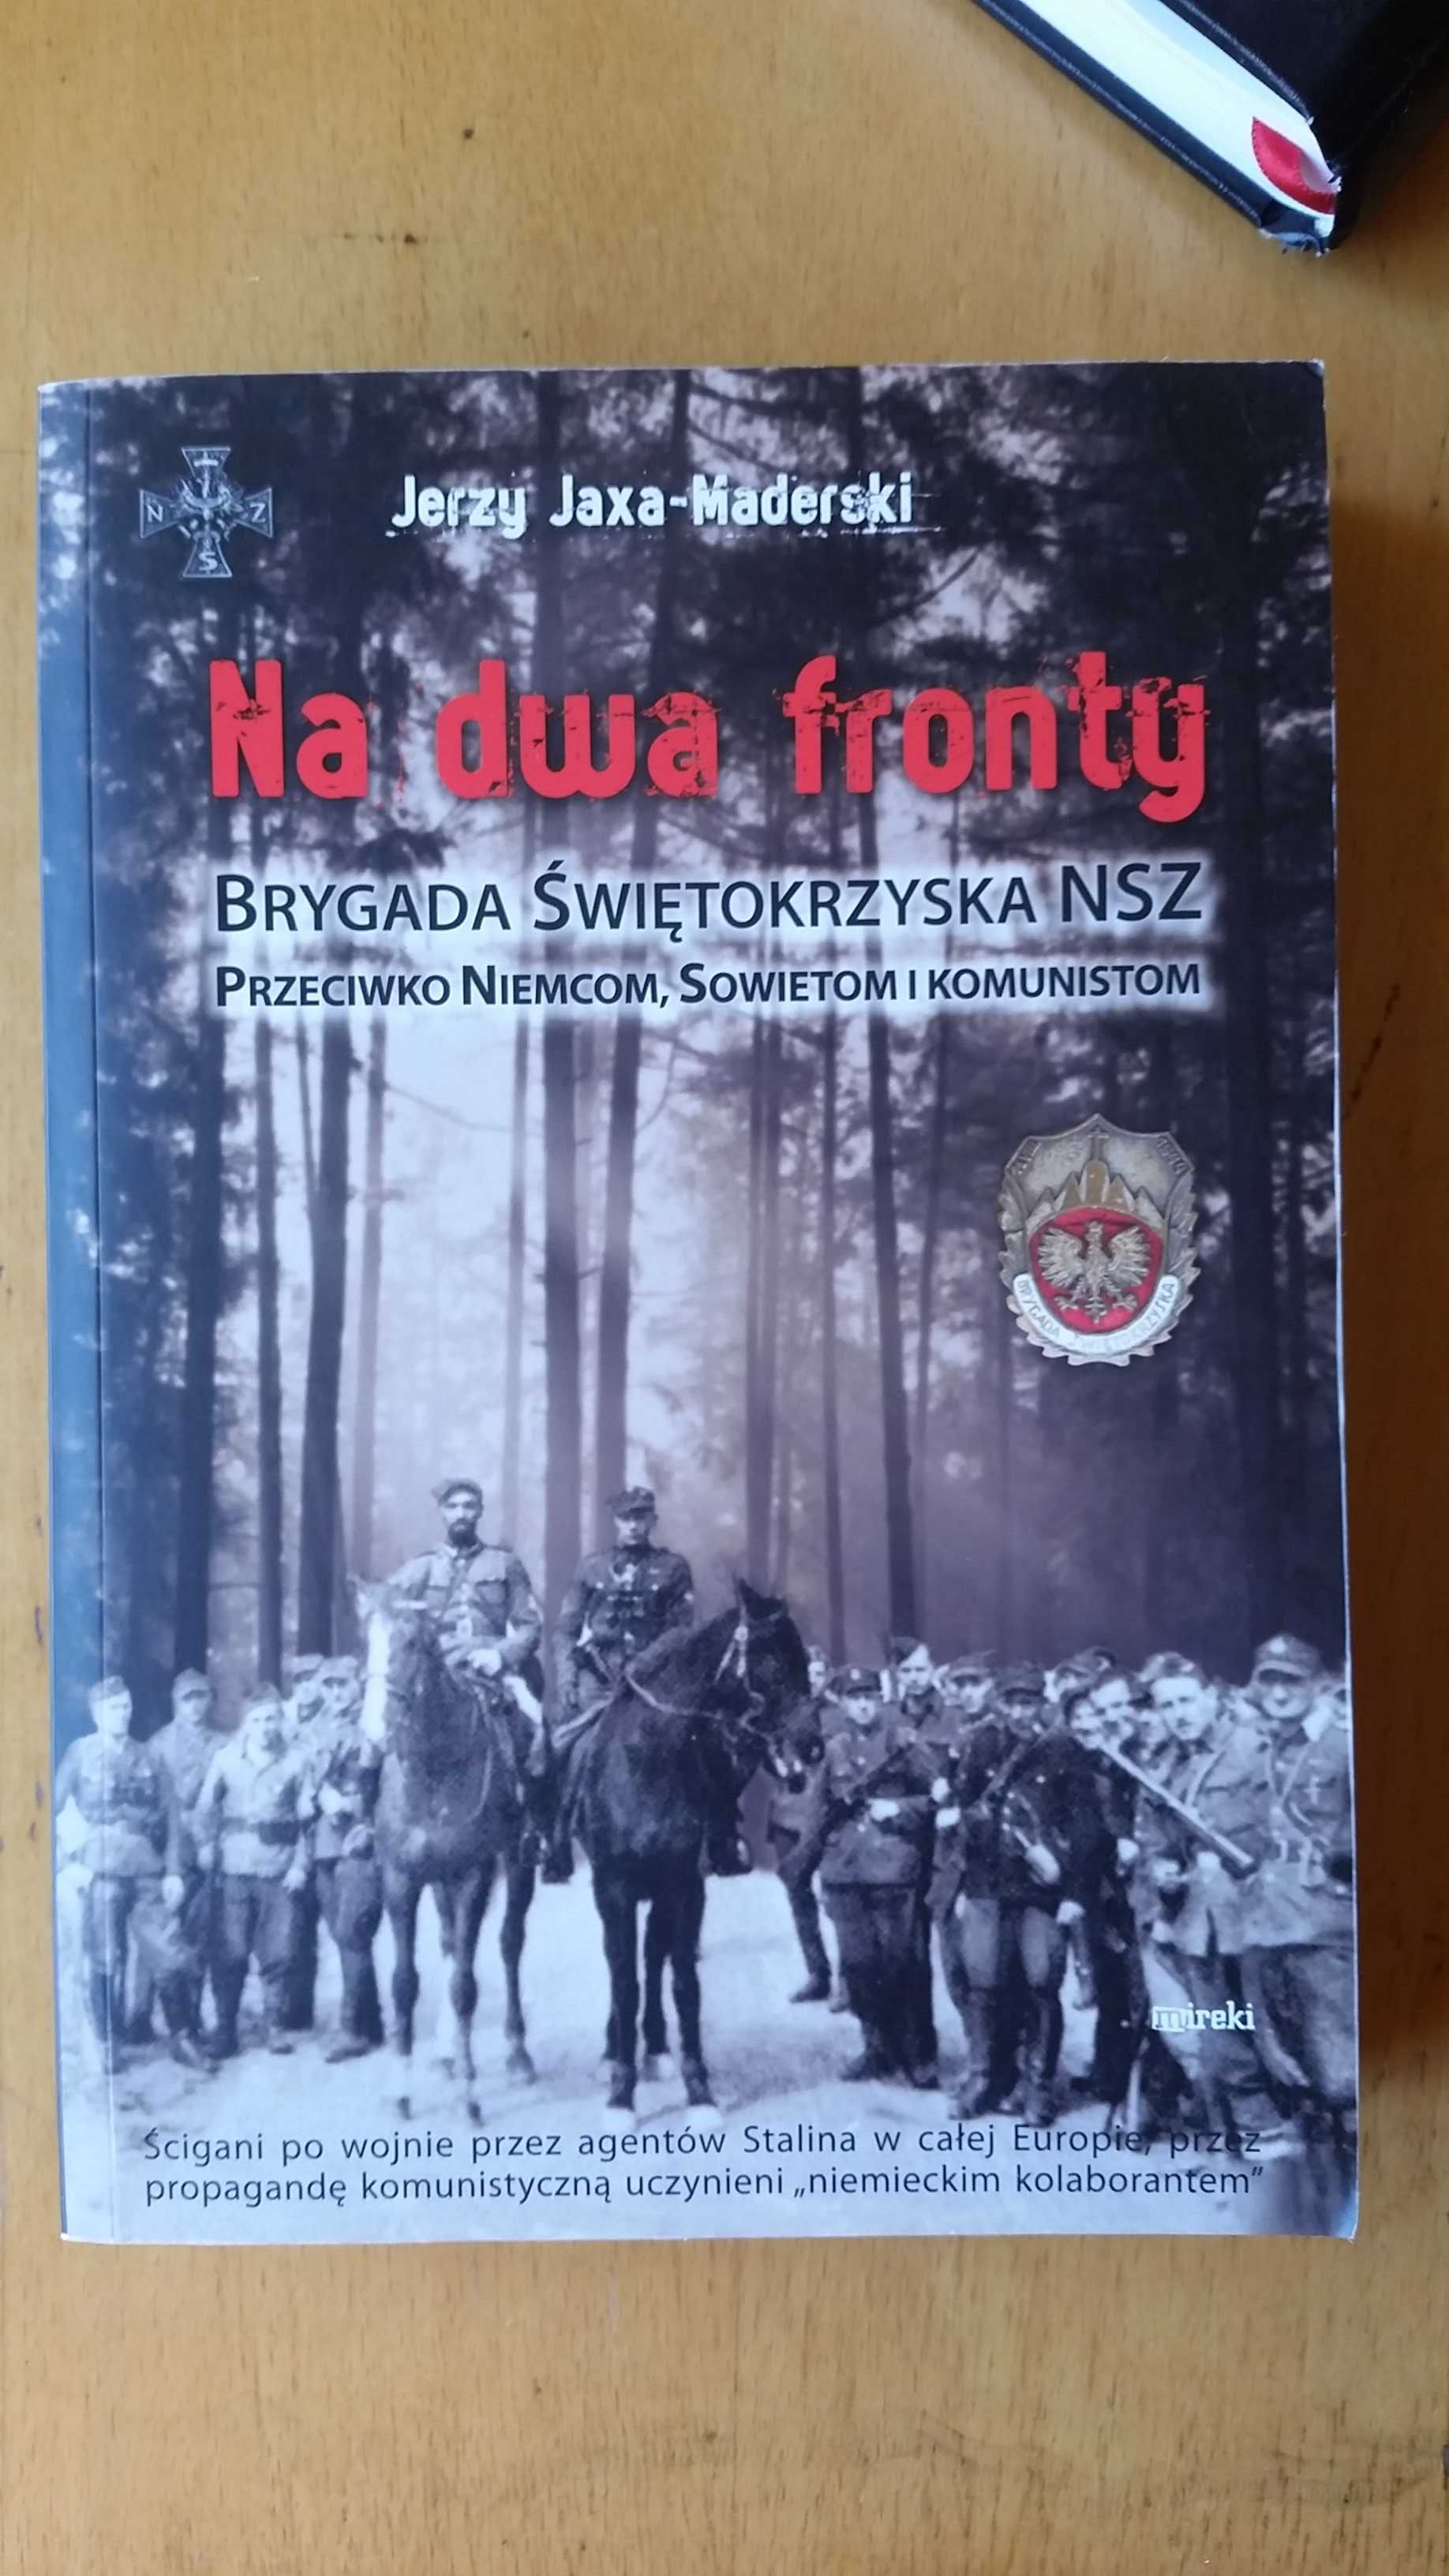 Na dwa fronty Brygada Świętokrzyska NSZ
Jerzy Jaxa-Maderski